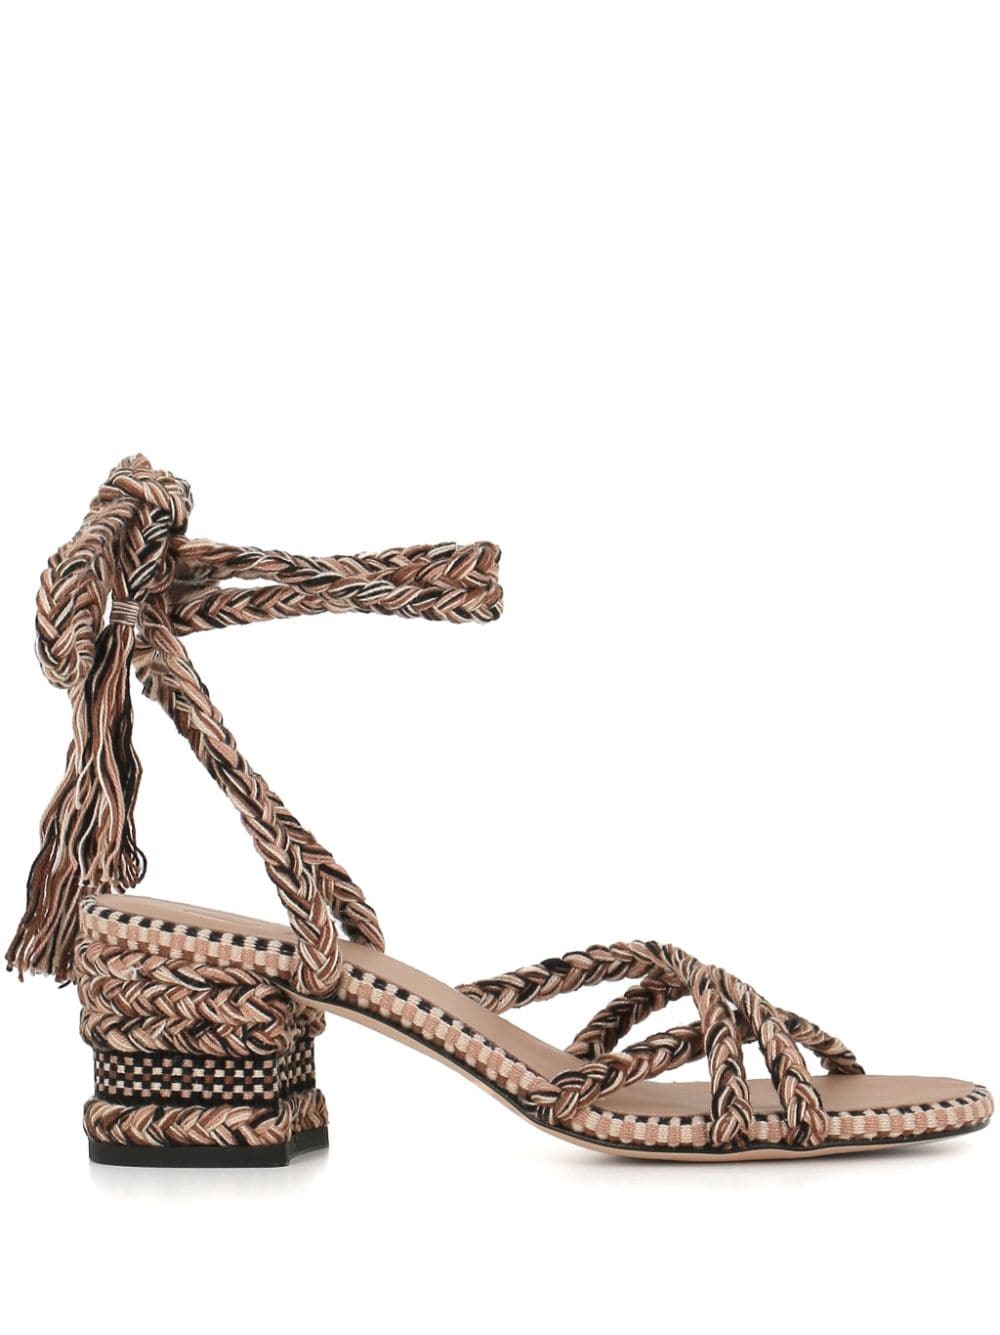 AMAMBAIH Isabel 60mm braided sandals - Neutrals von AMAMBAIH